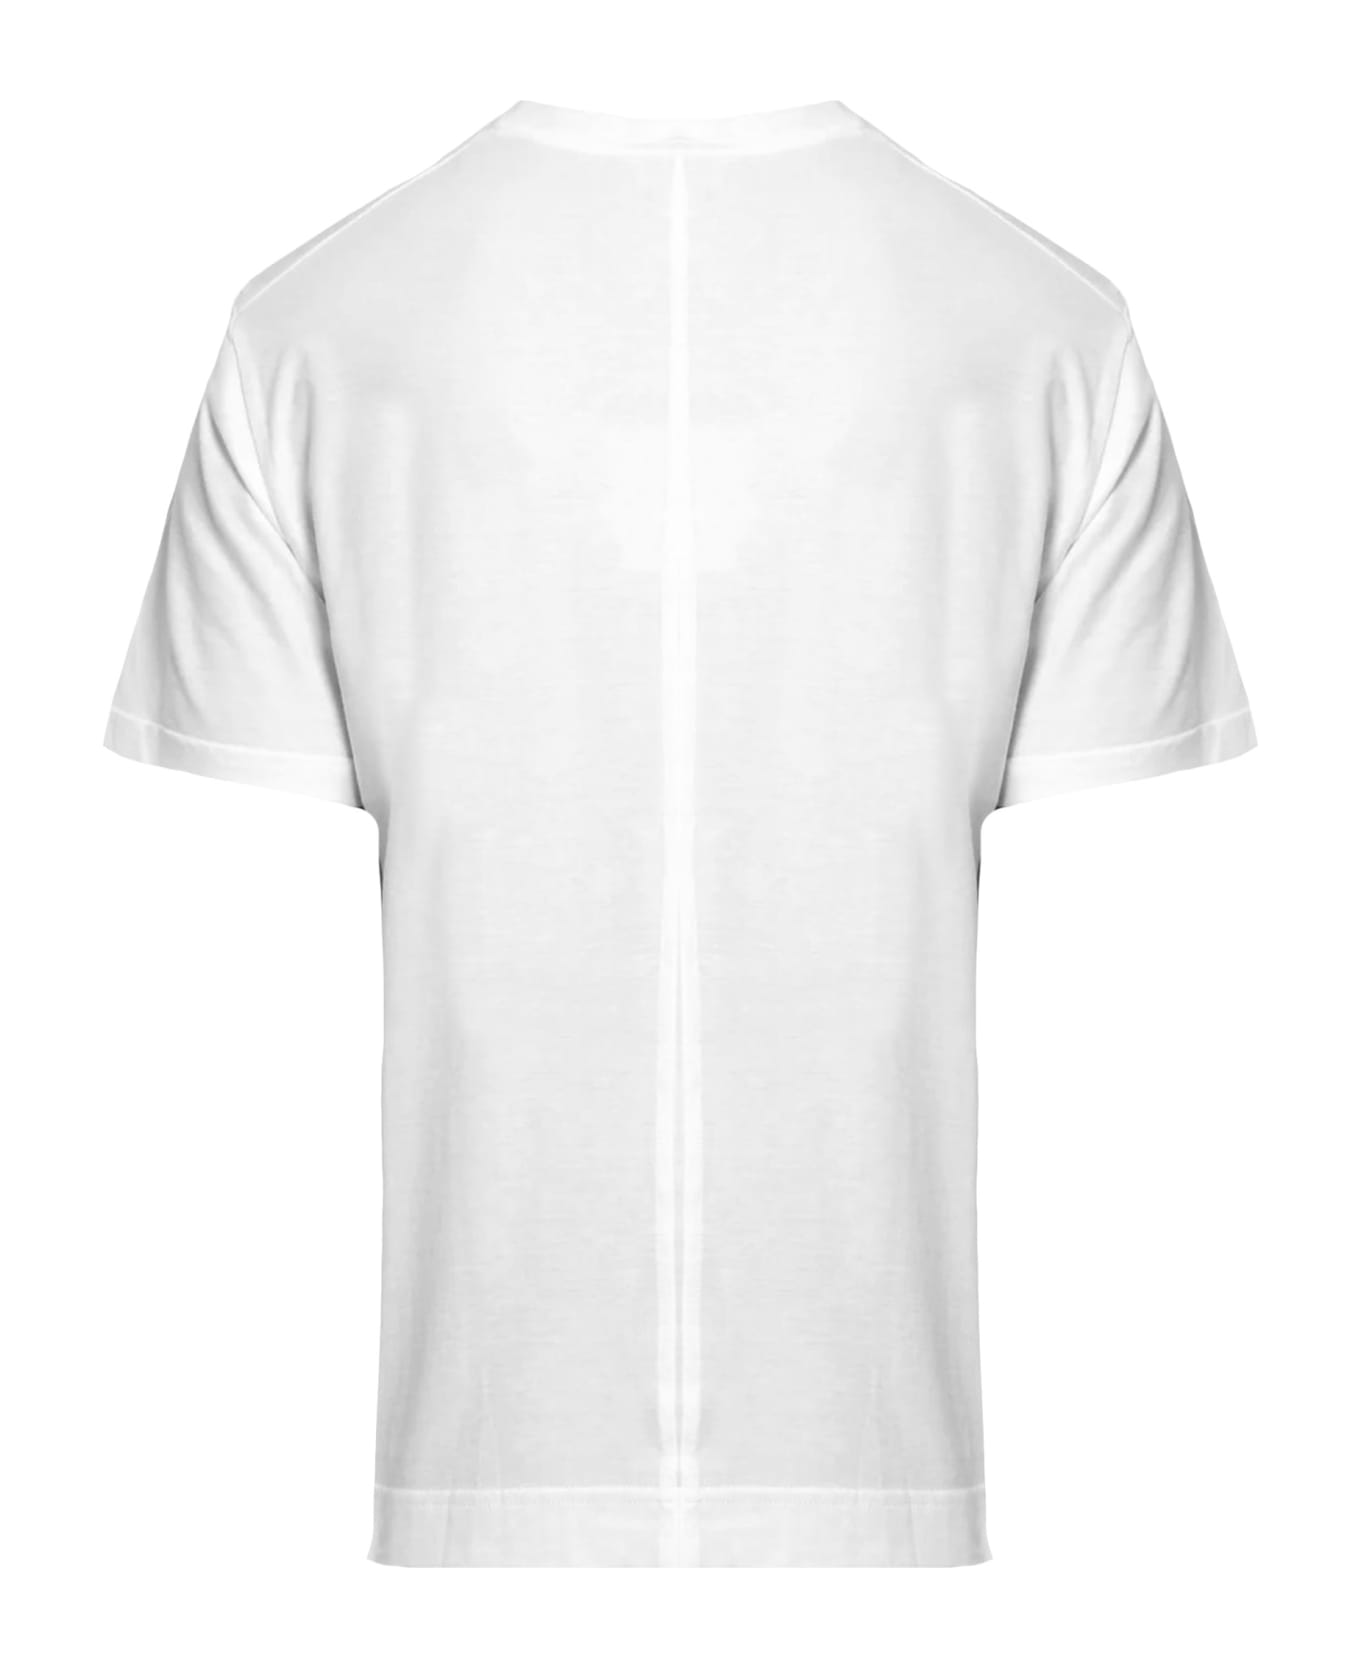 Paolo Pecora White Cotton T-shirt - White